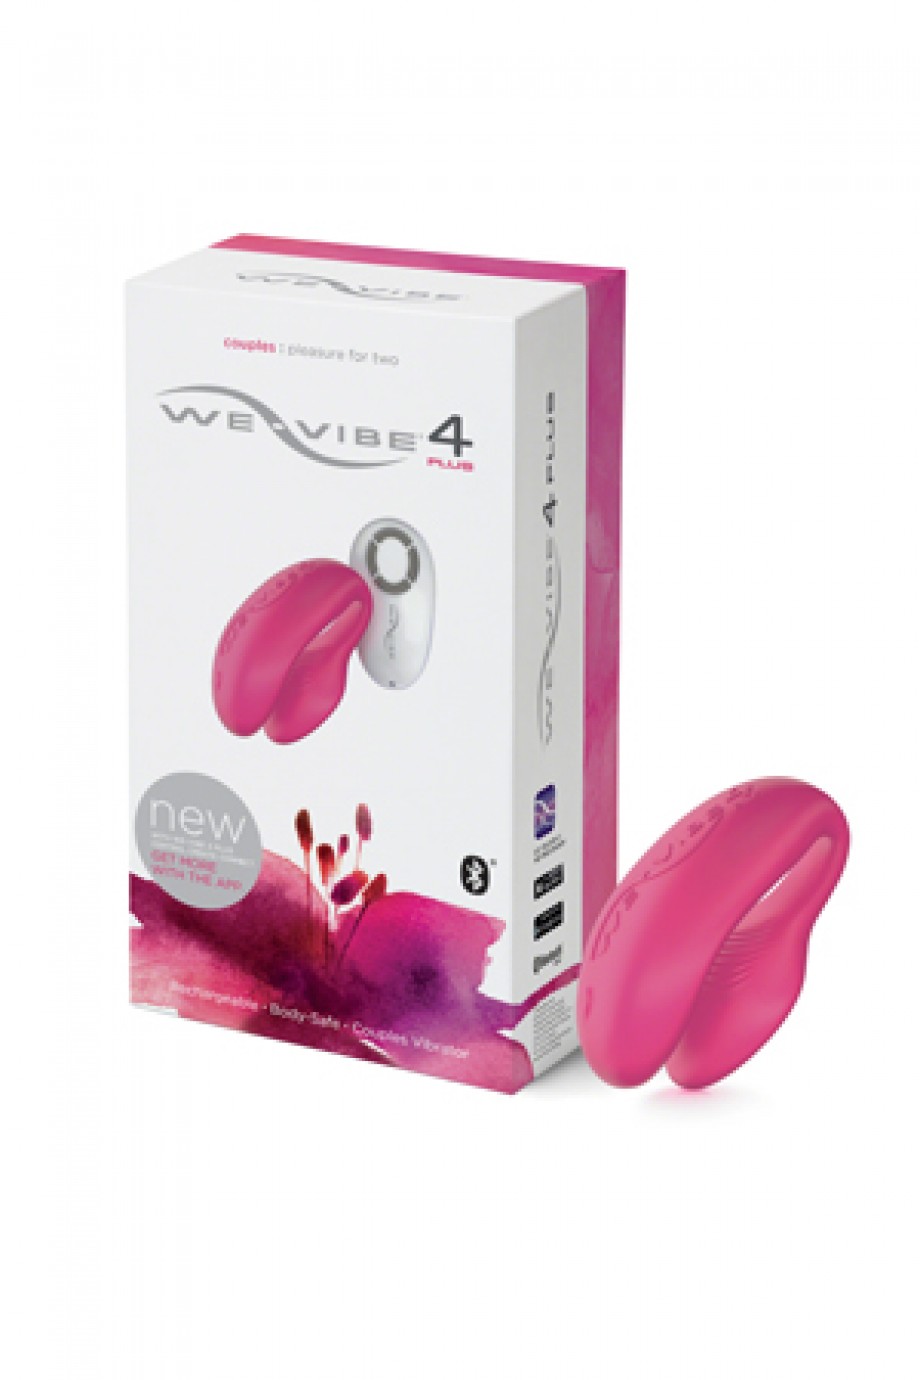 Вибратор для пар WE-Vibe 4 Plus (вивайб), розовый